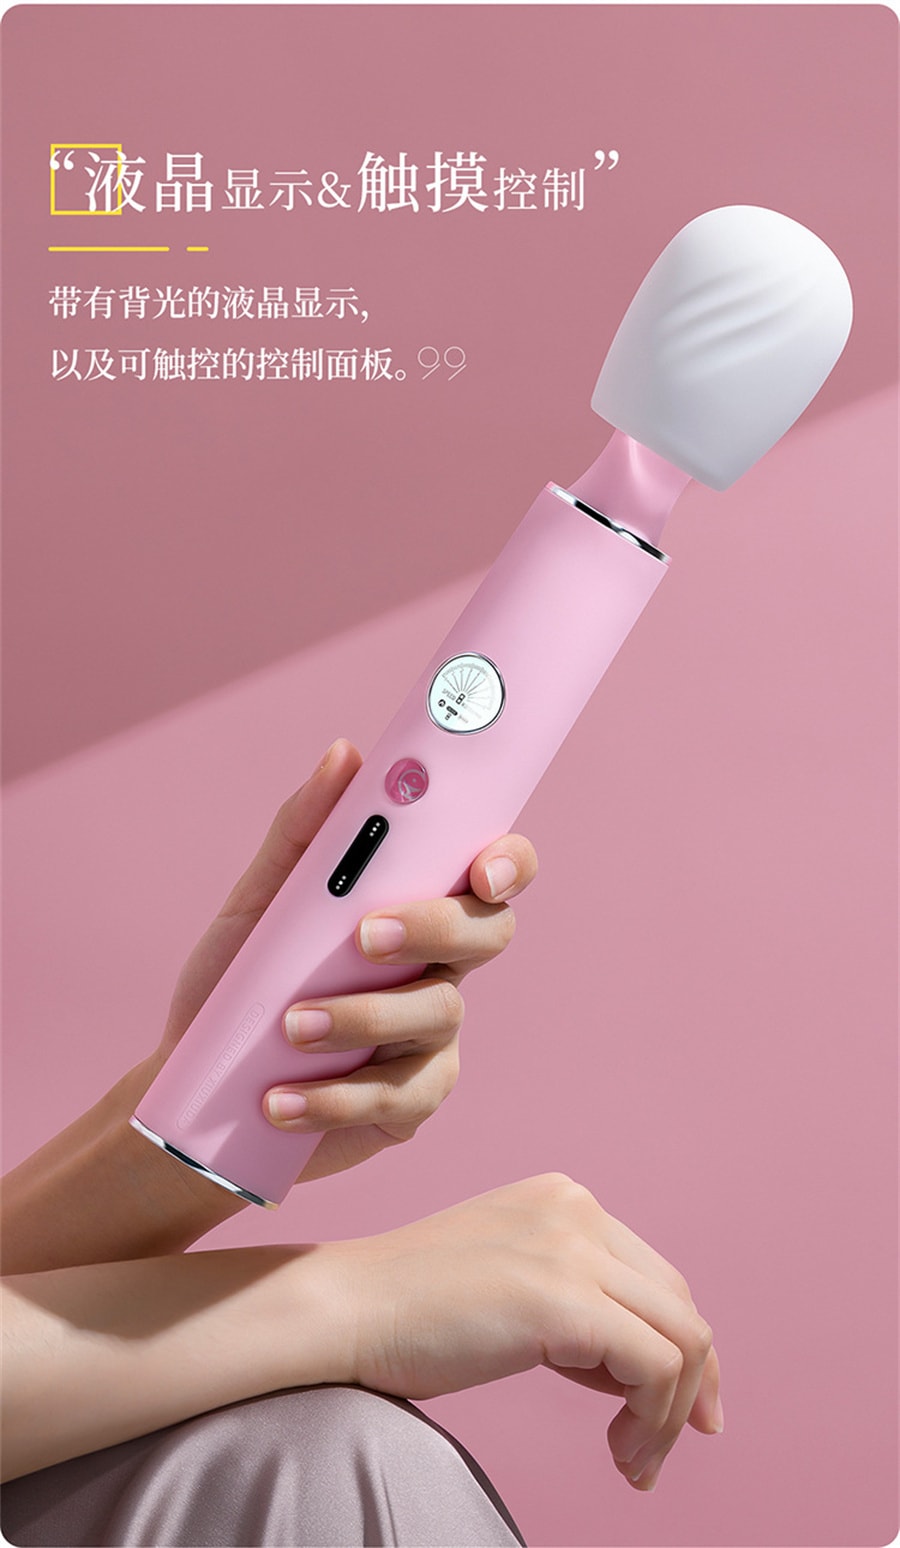 【中国直邮】羞羞哒 液晶显示触控震动器 焉粉色 成人用品